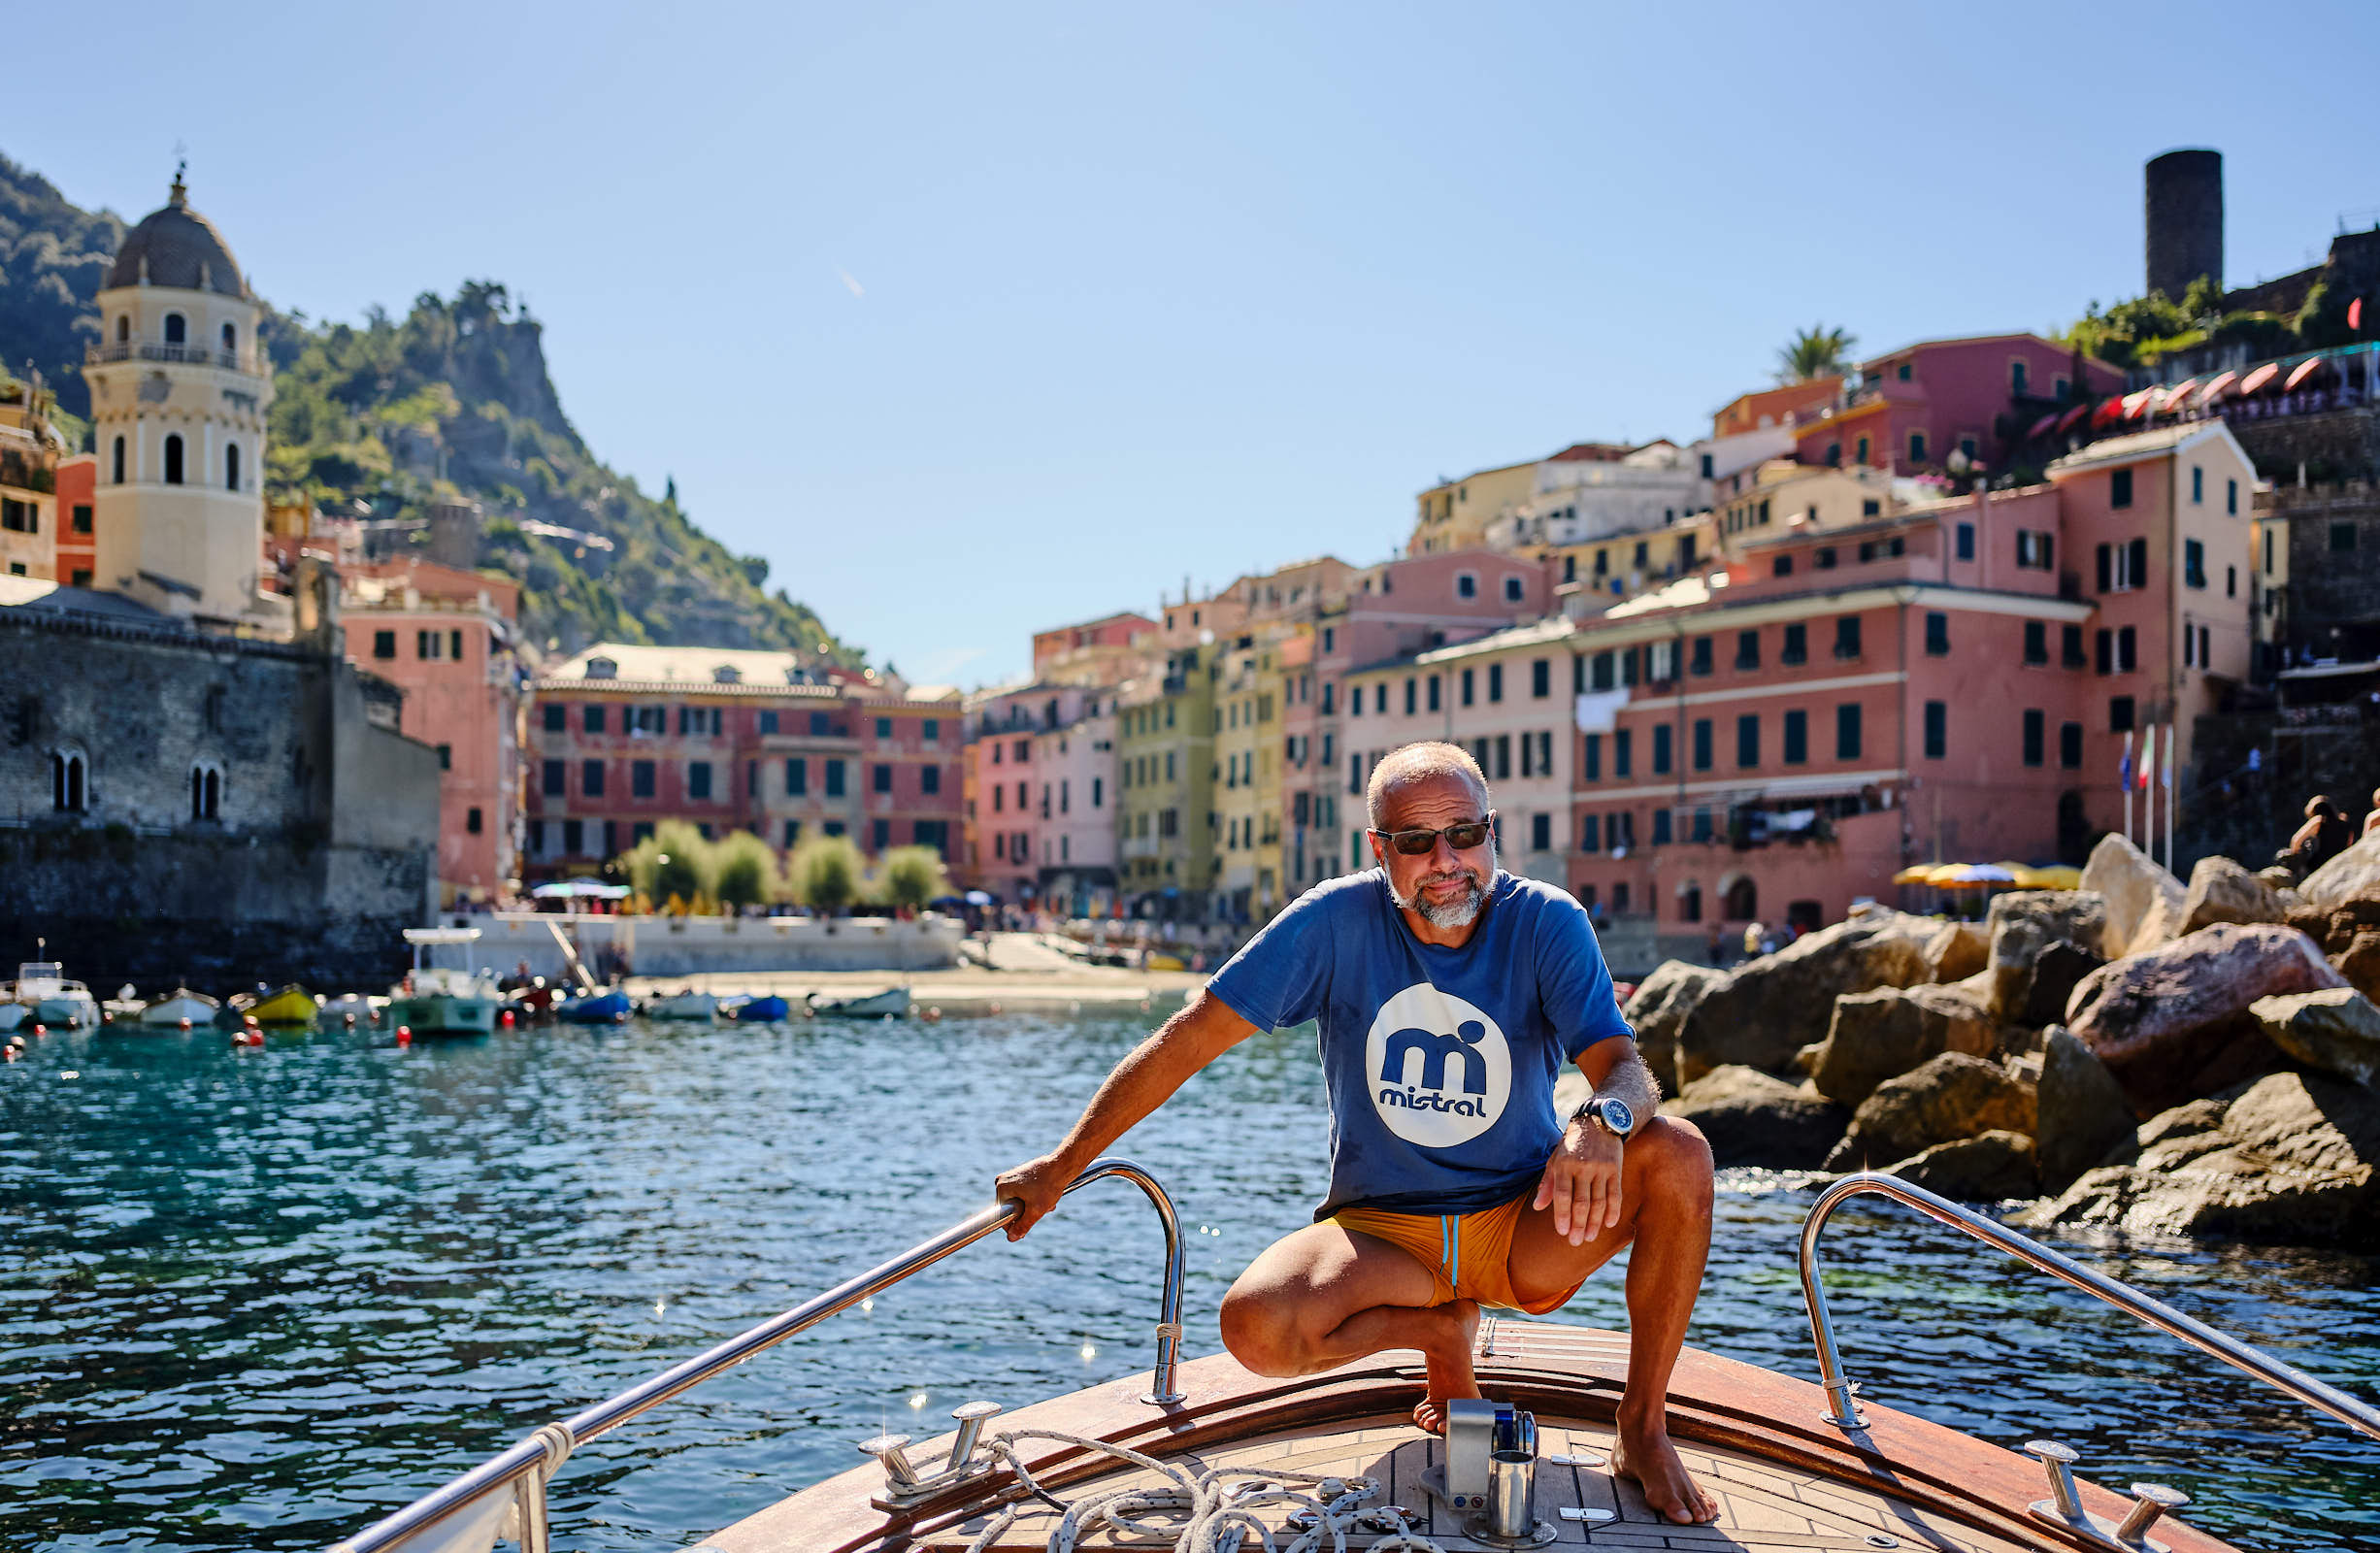 Captain Cosimo of BB Cinque Terre Boat Tours